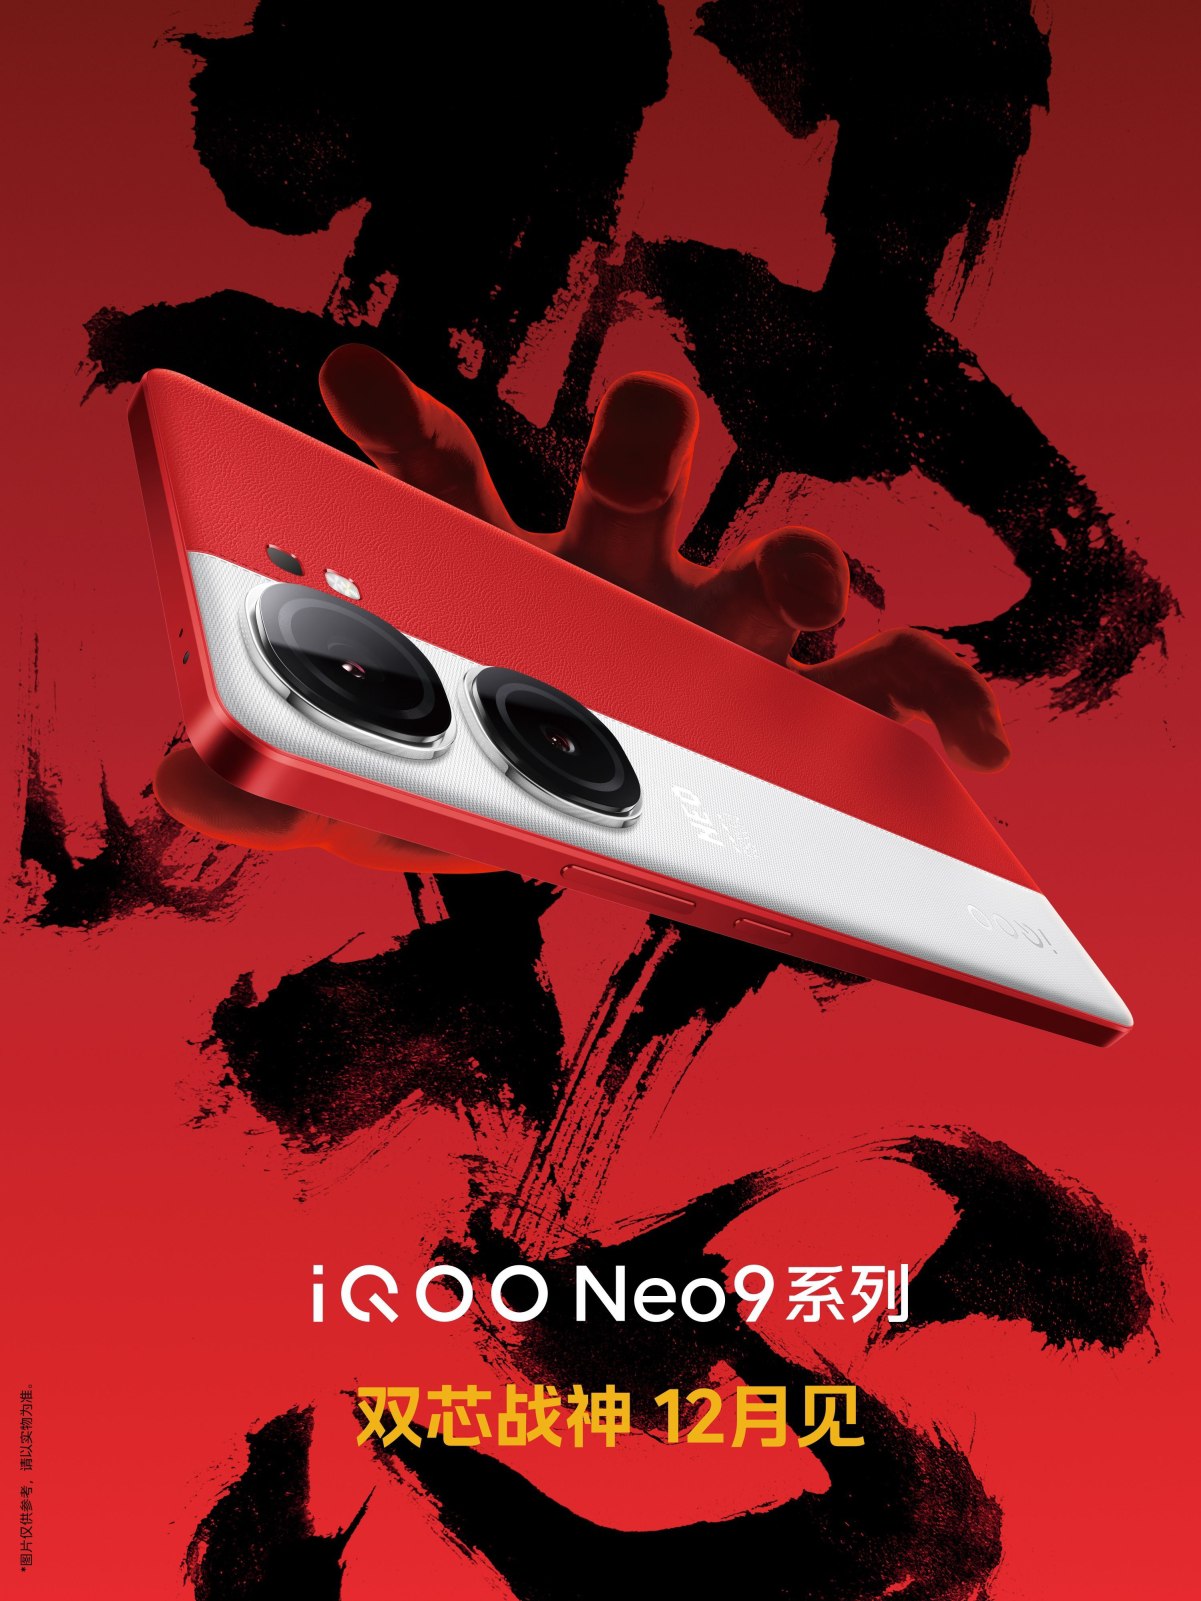 سلسلة iQOO Neo9 ستصل في شهر ديسمبر بتصميم ثنائي اللون